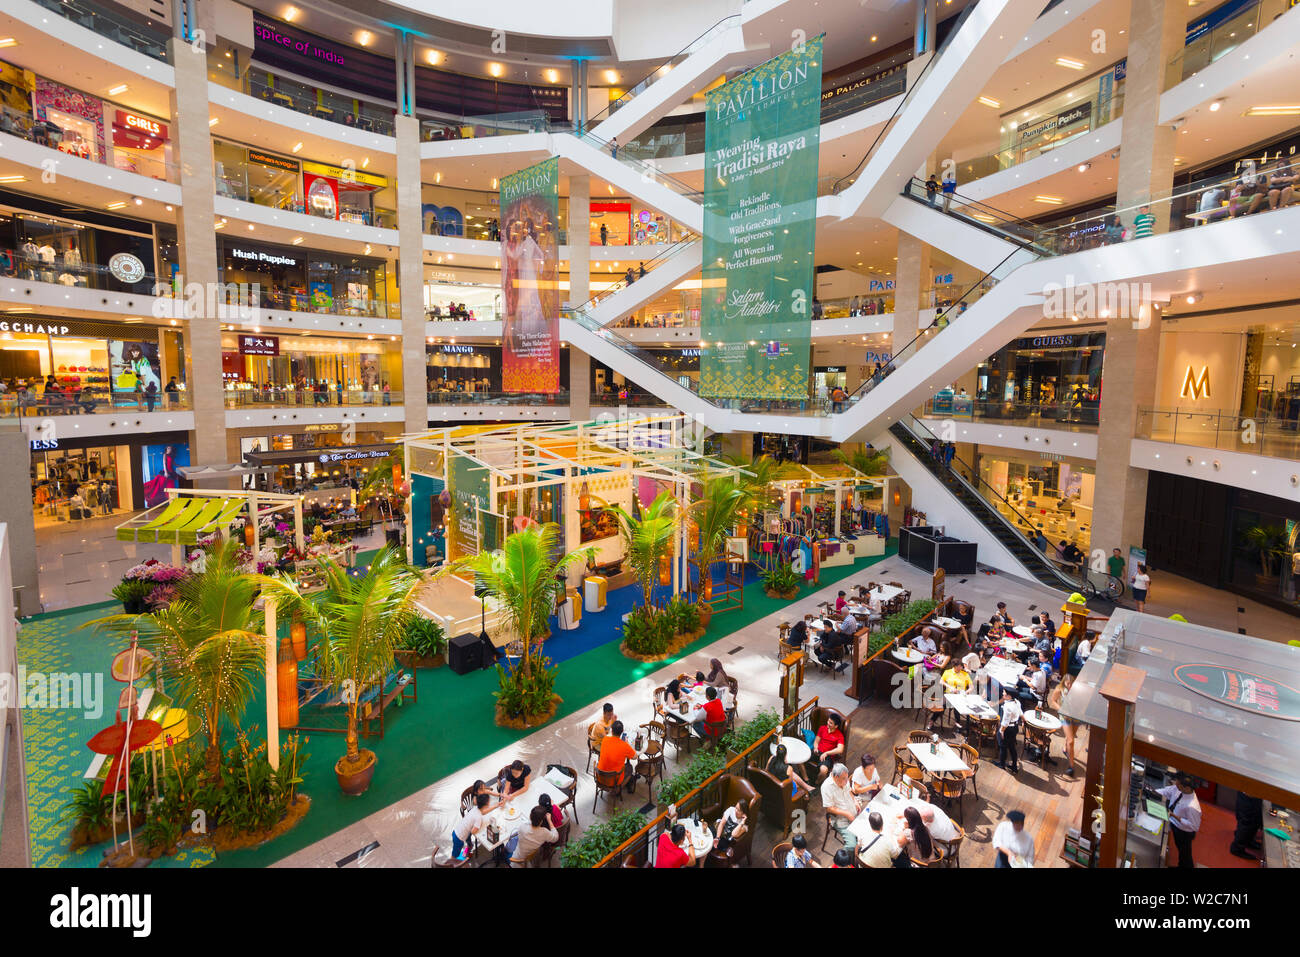 Malaysia, Kuala Lumpur, Bukit Bintang, Pavilion Kuala Lumpur shopping mall Stock Photo